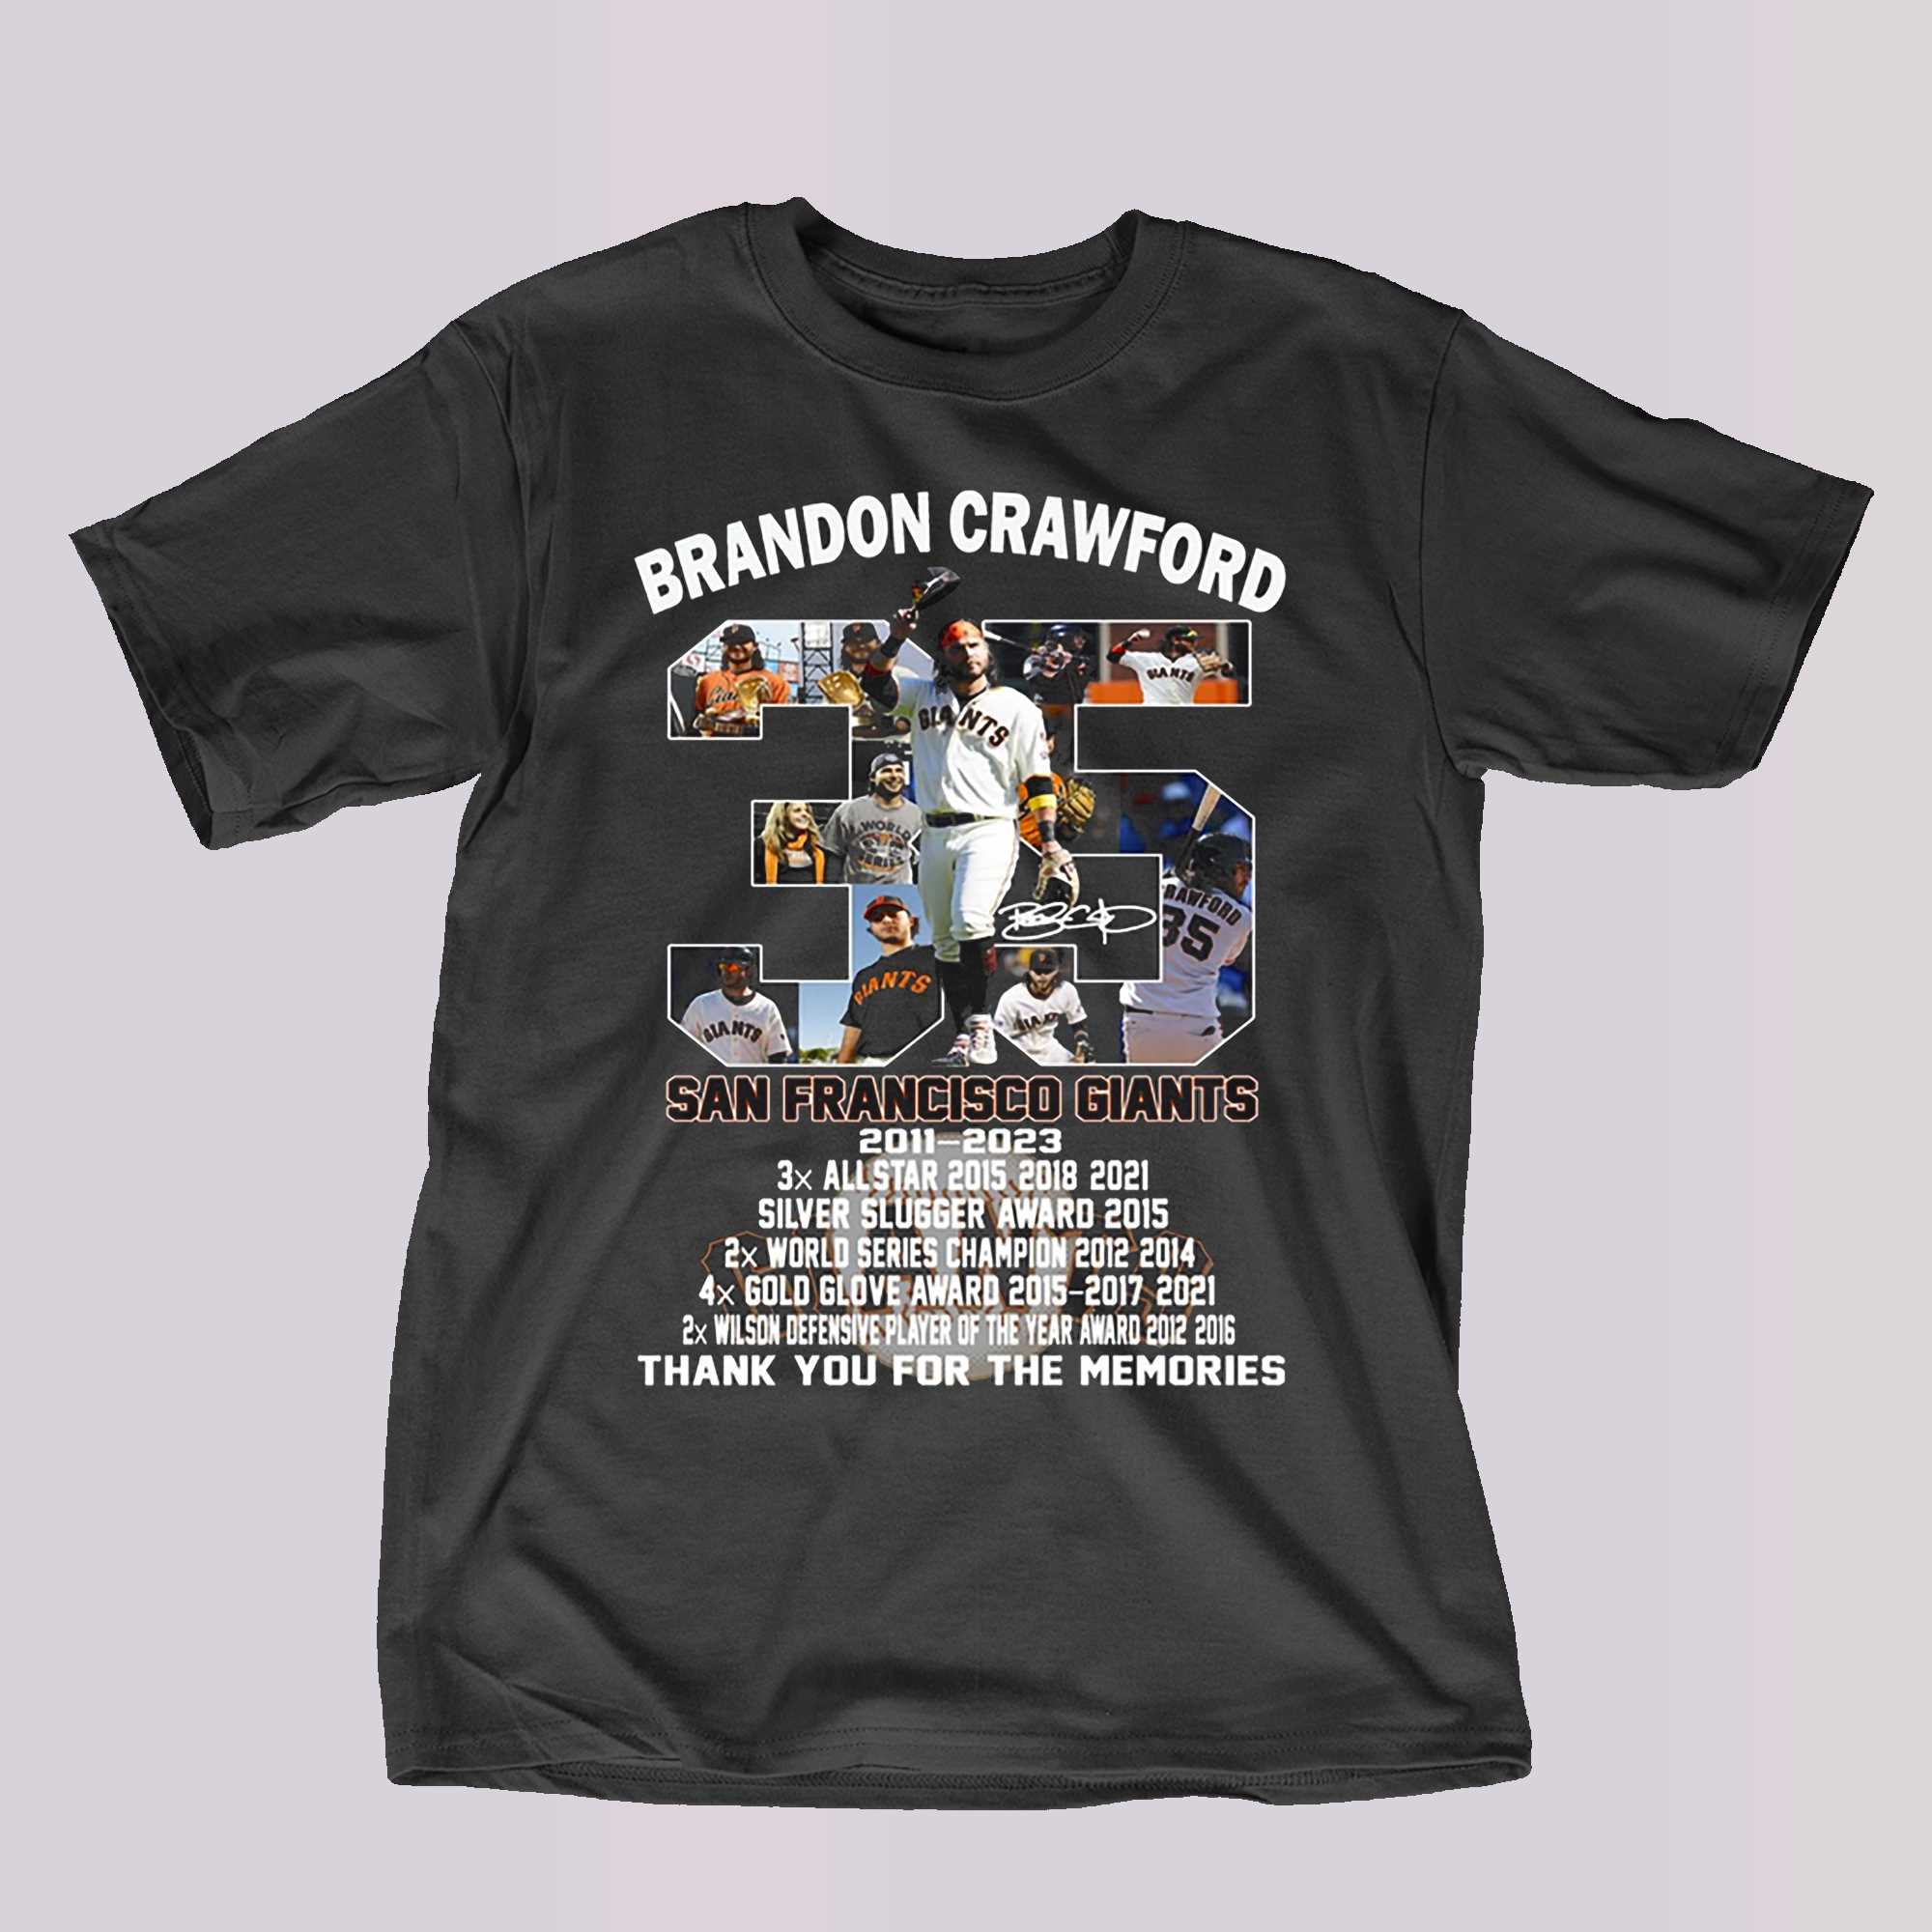 Brandon Crawford Apparel, Brandon Crawford Jersey, Shirt